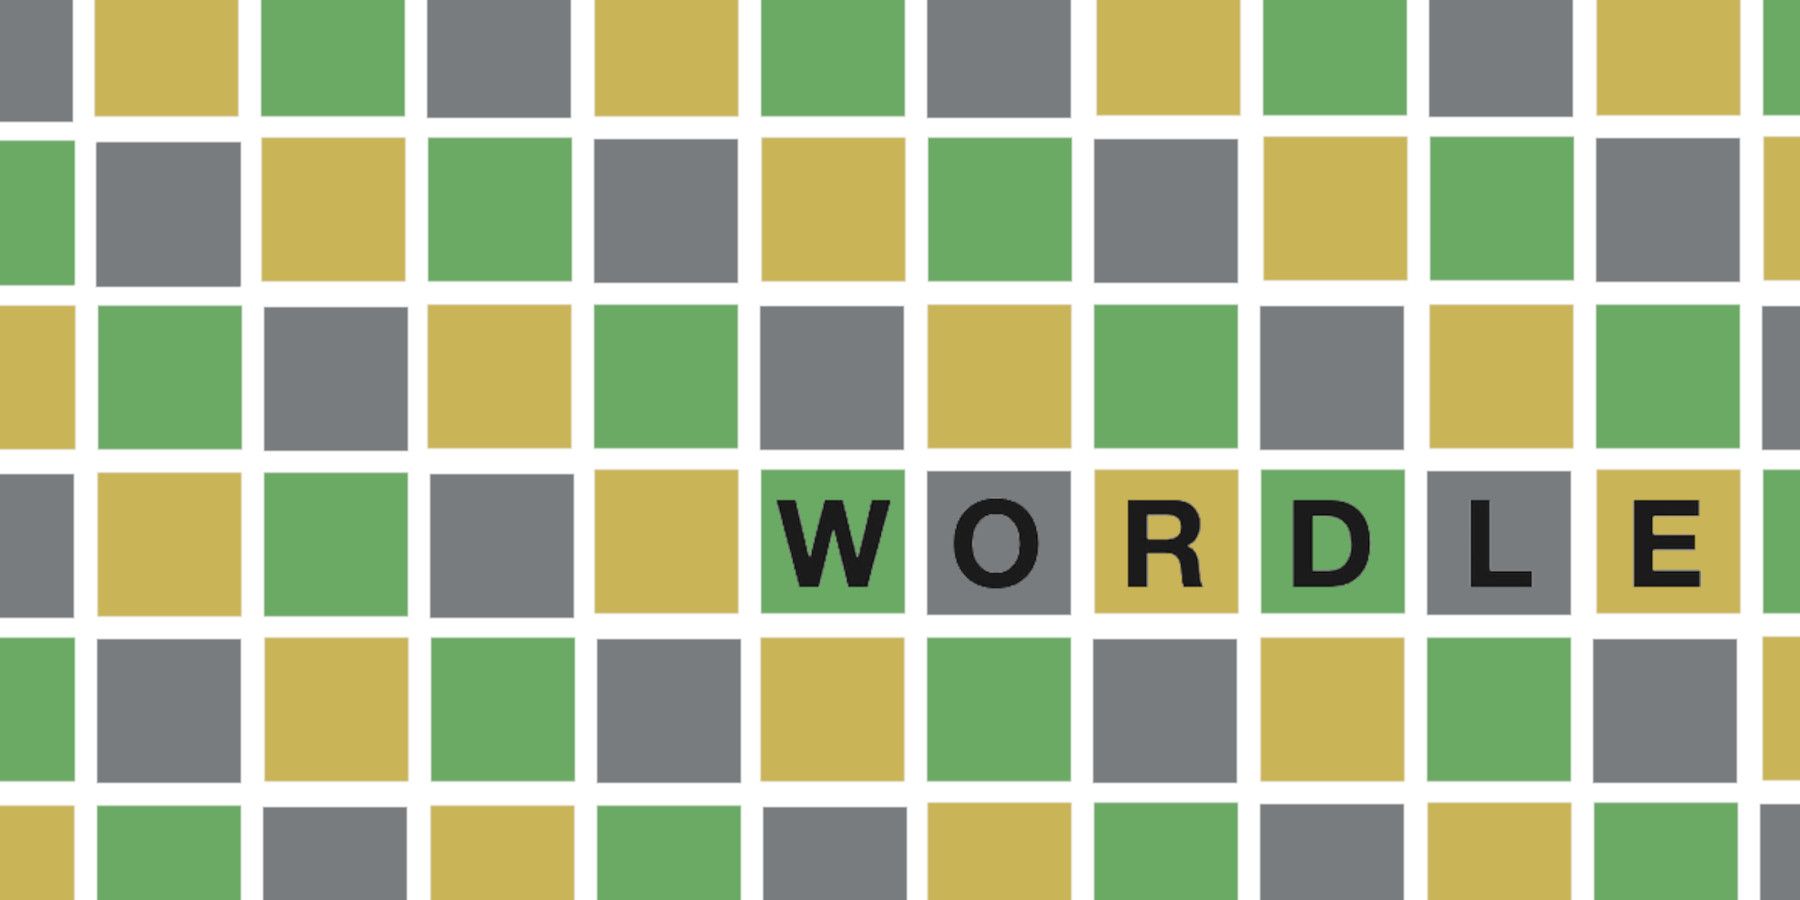 Wordle 234 პასუხი 2022 წლის 8 თებერვლისთვის